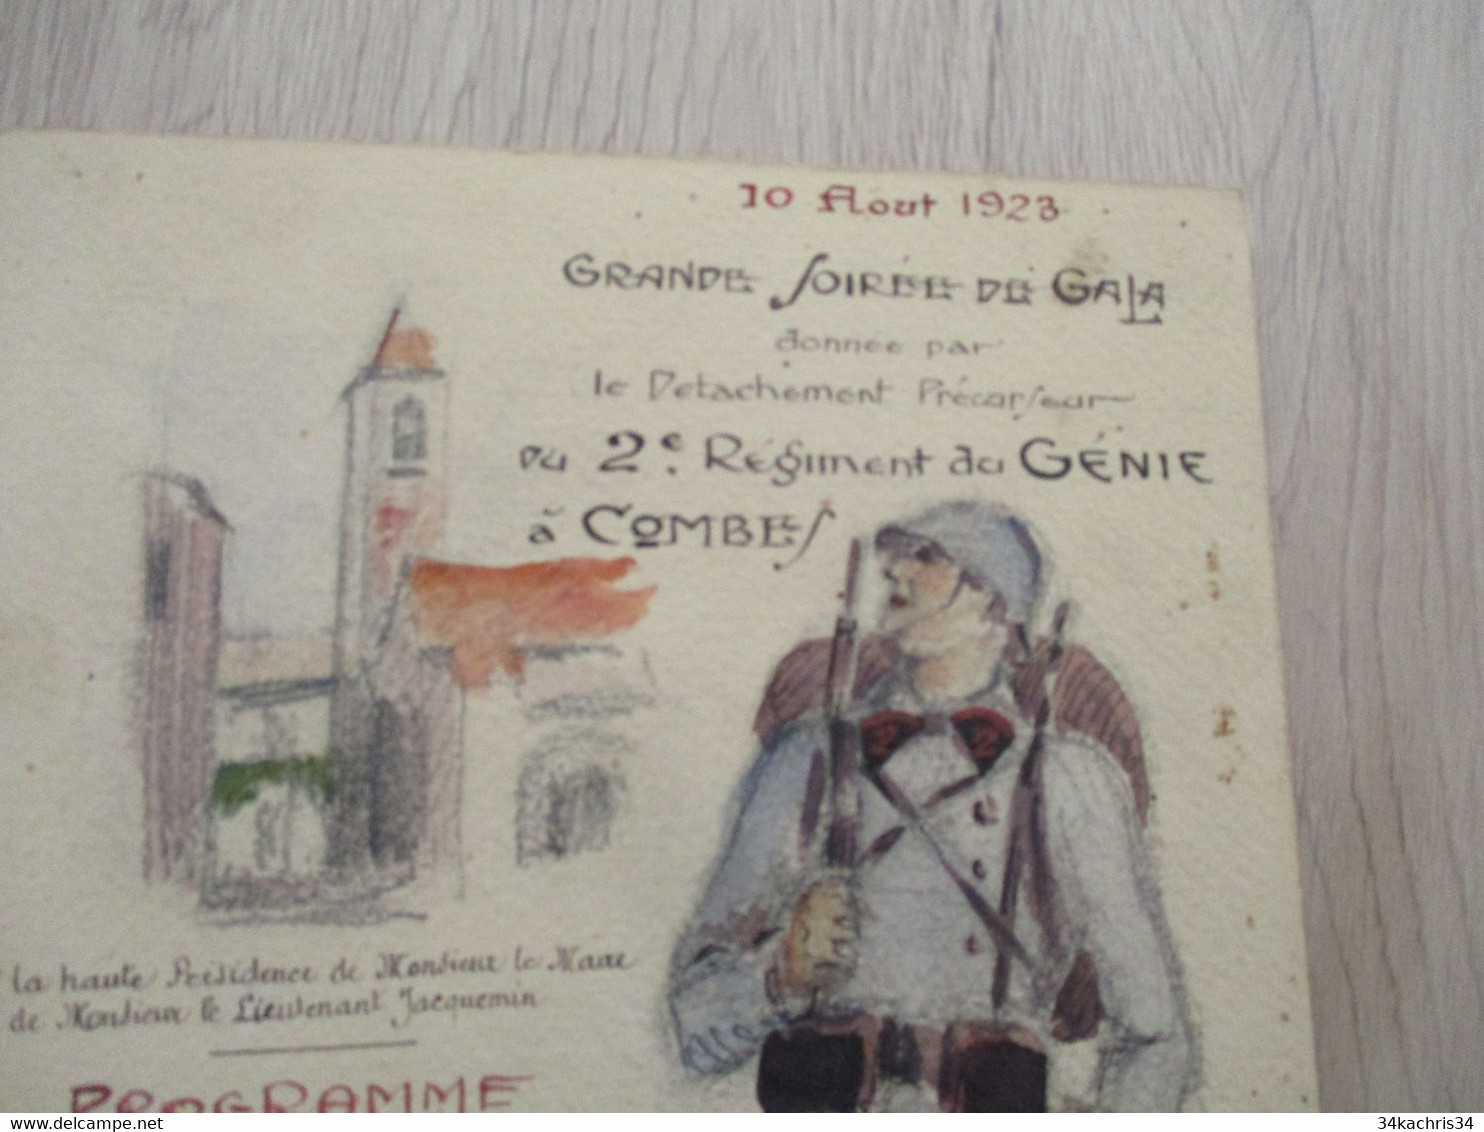 Menu Manuscrit  Dessin Original Combes 10/08/1923 Grande Soirée De Gala Détachement Précurseur Du 2ème Régiment Génie - Menus